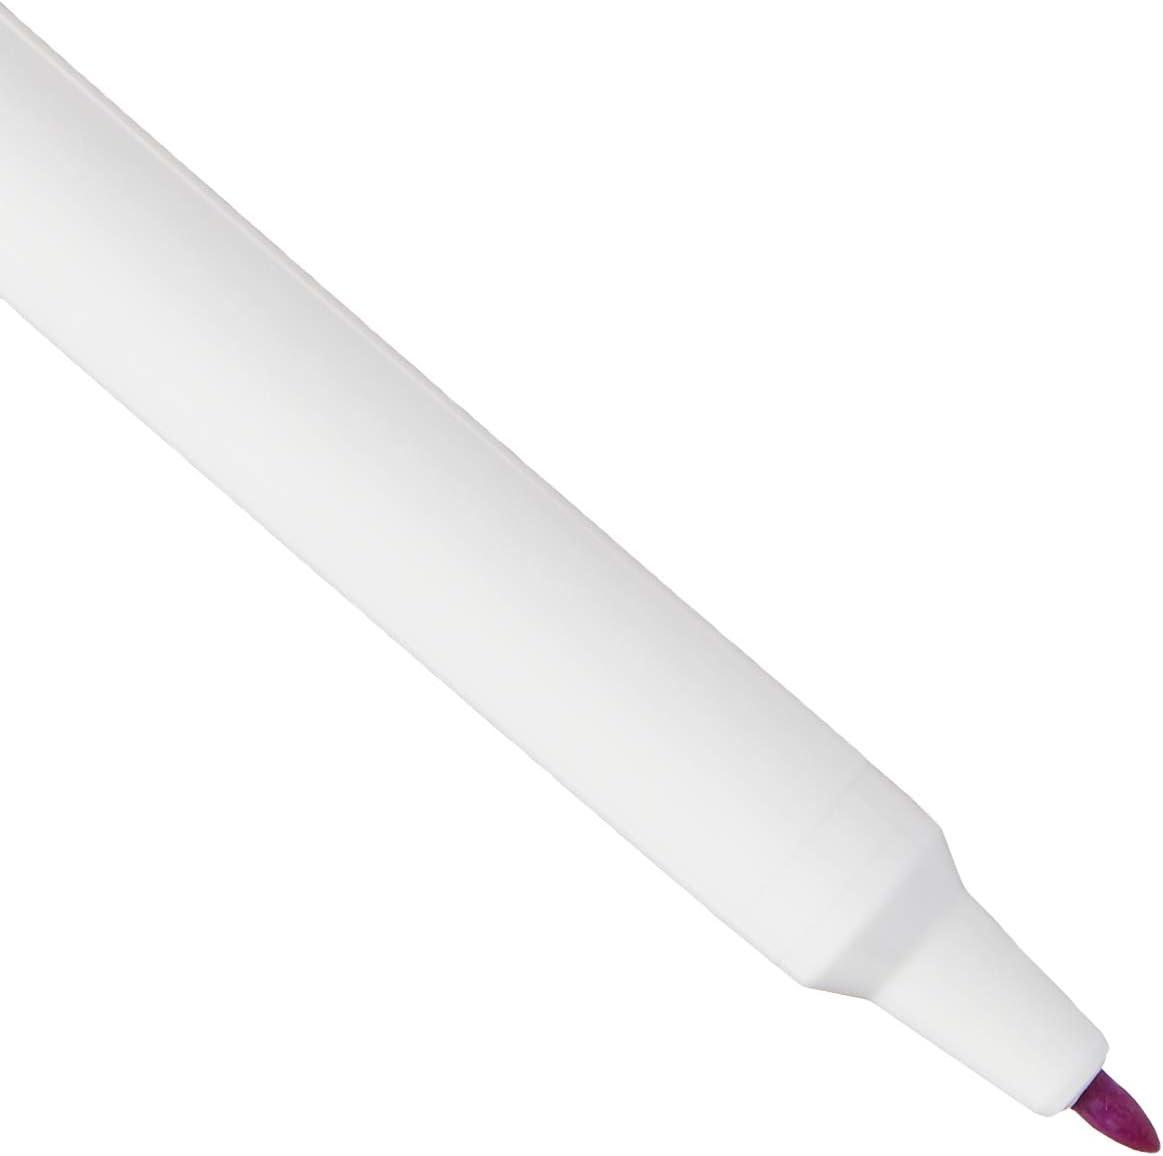 Dritz Disappearing Ink Marking Pen - Purple